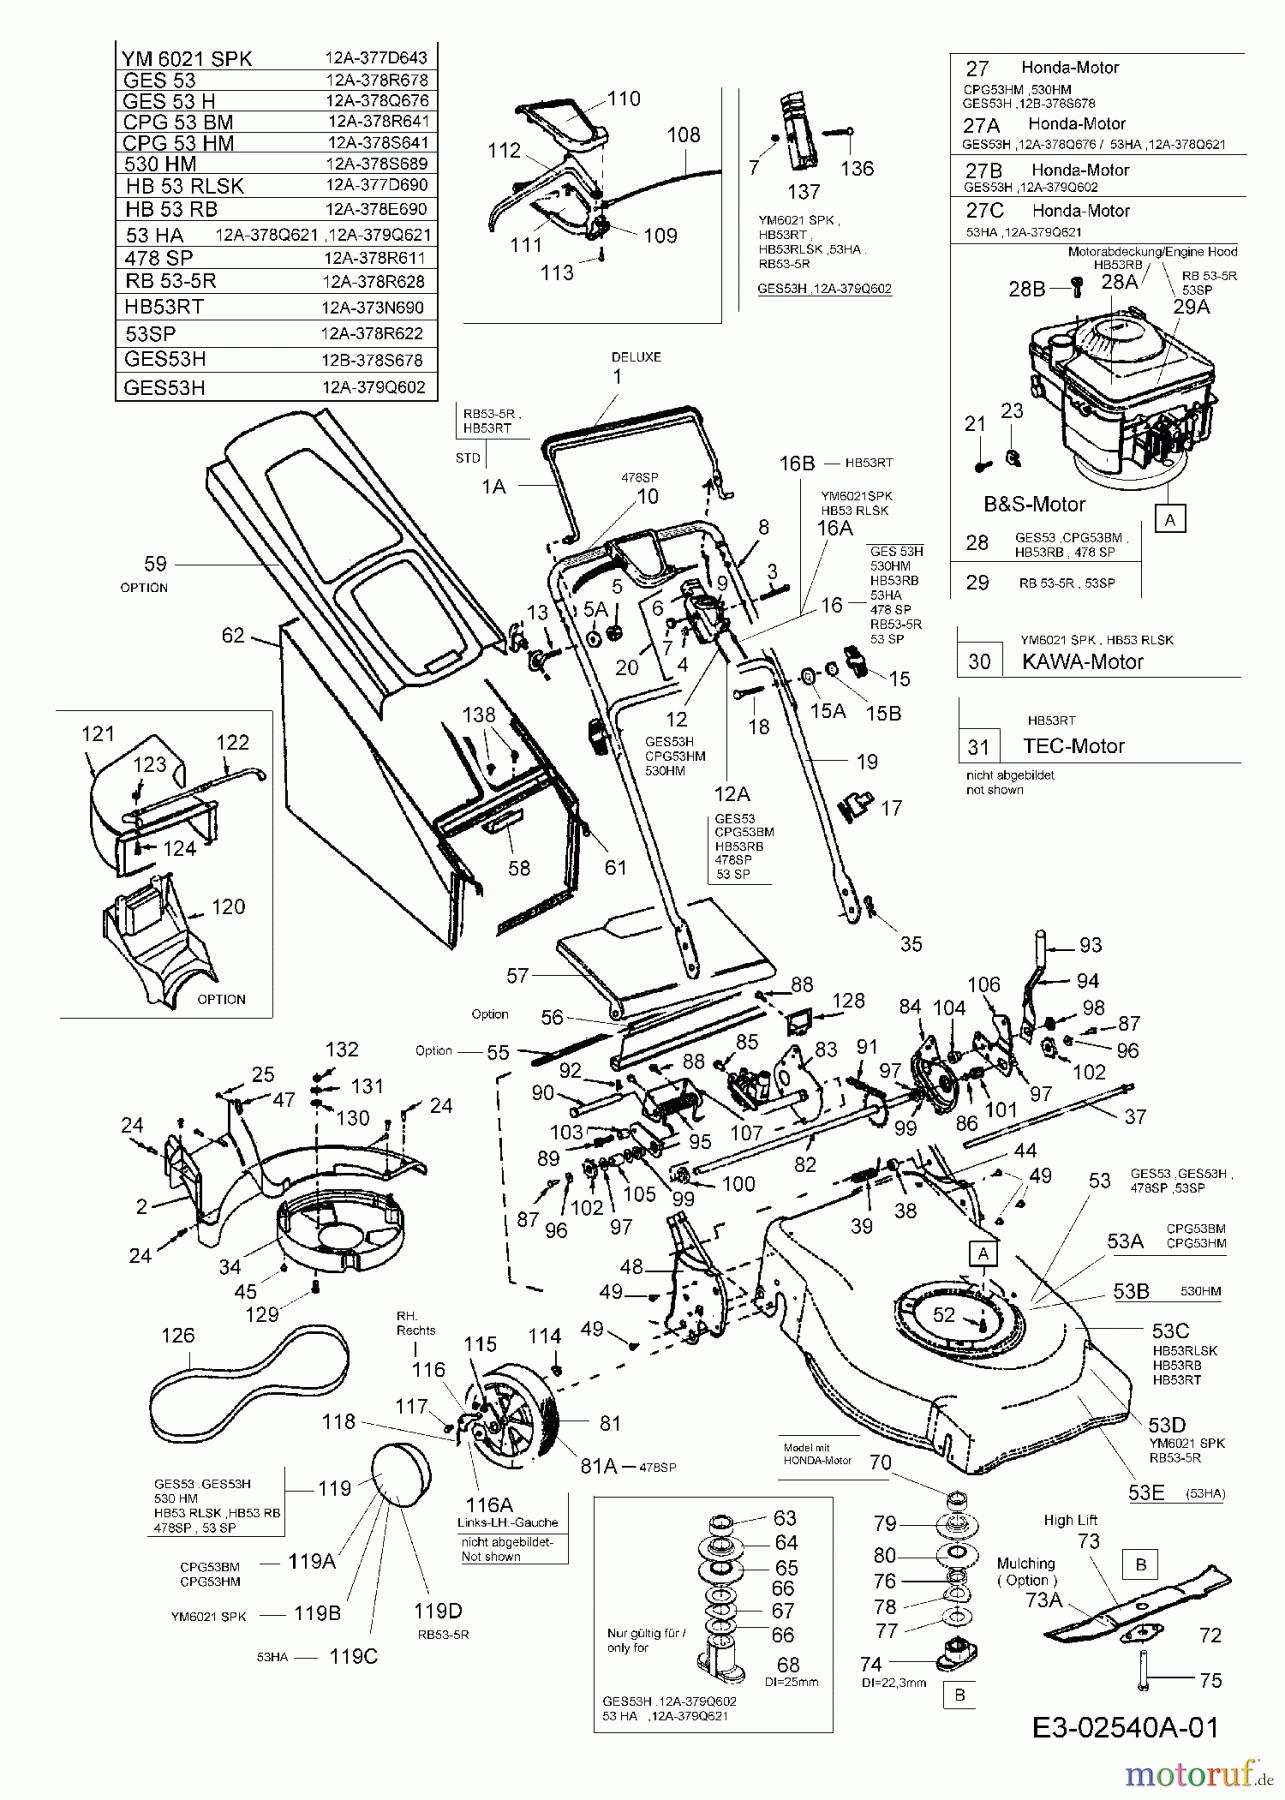  MTD Motormäher mit Antrieb GES 53 H 12B-378S678  (2005) Grundgerät